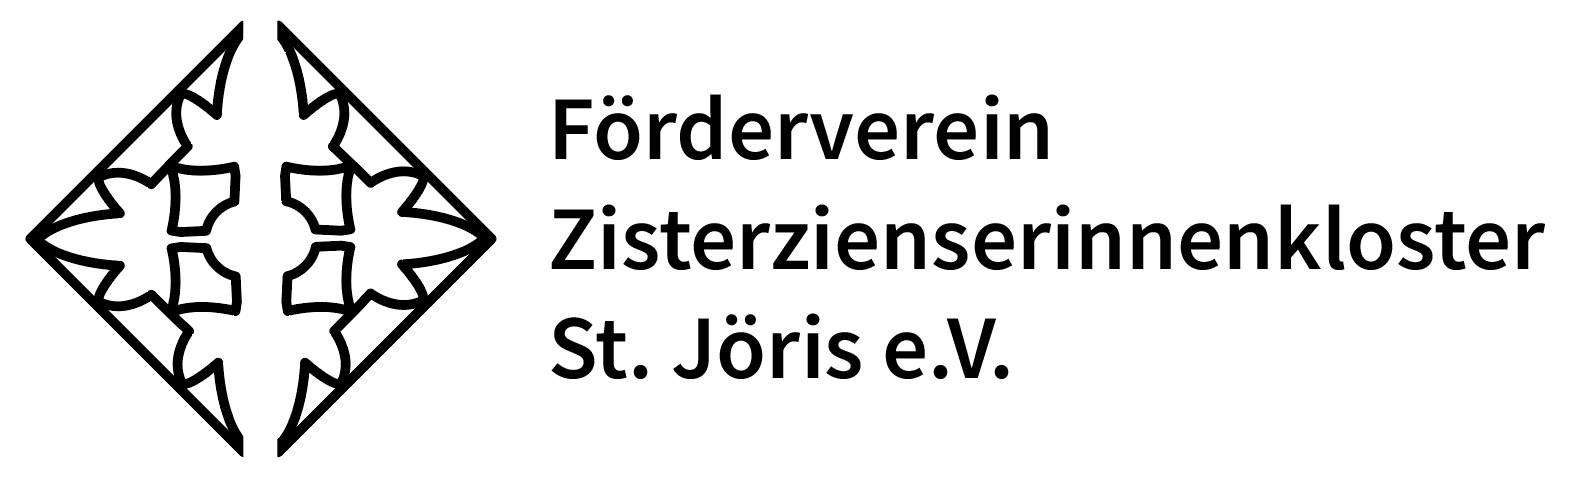 Förderverein Zisterzienserinnenkloster St. Jöris e.V.